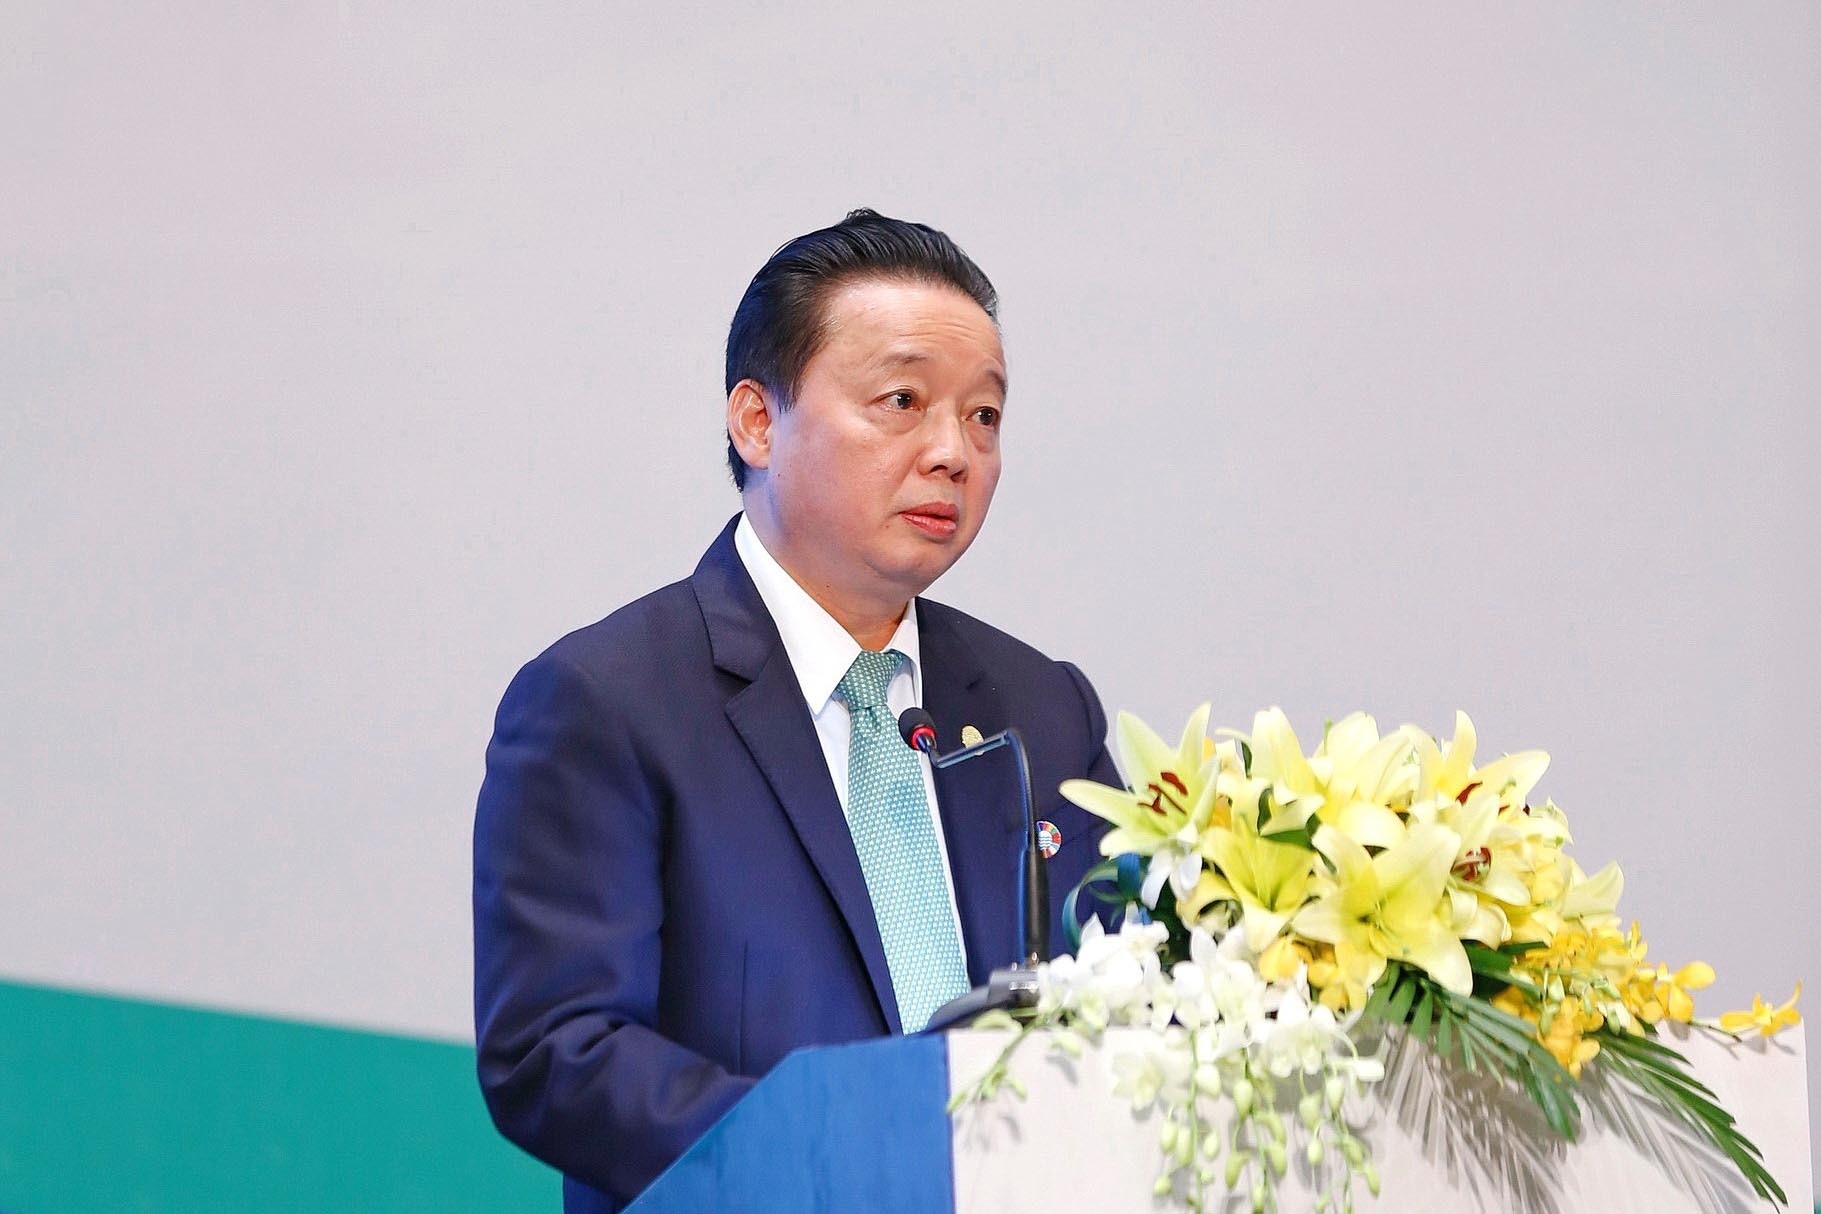 Bài phát biểu kết thúc kỳ họp Đại hội đồng GEF lần thứ 6 của Bộ trưởng Trần Hồng Hà